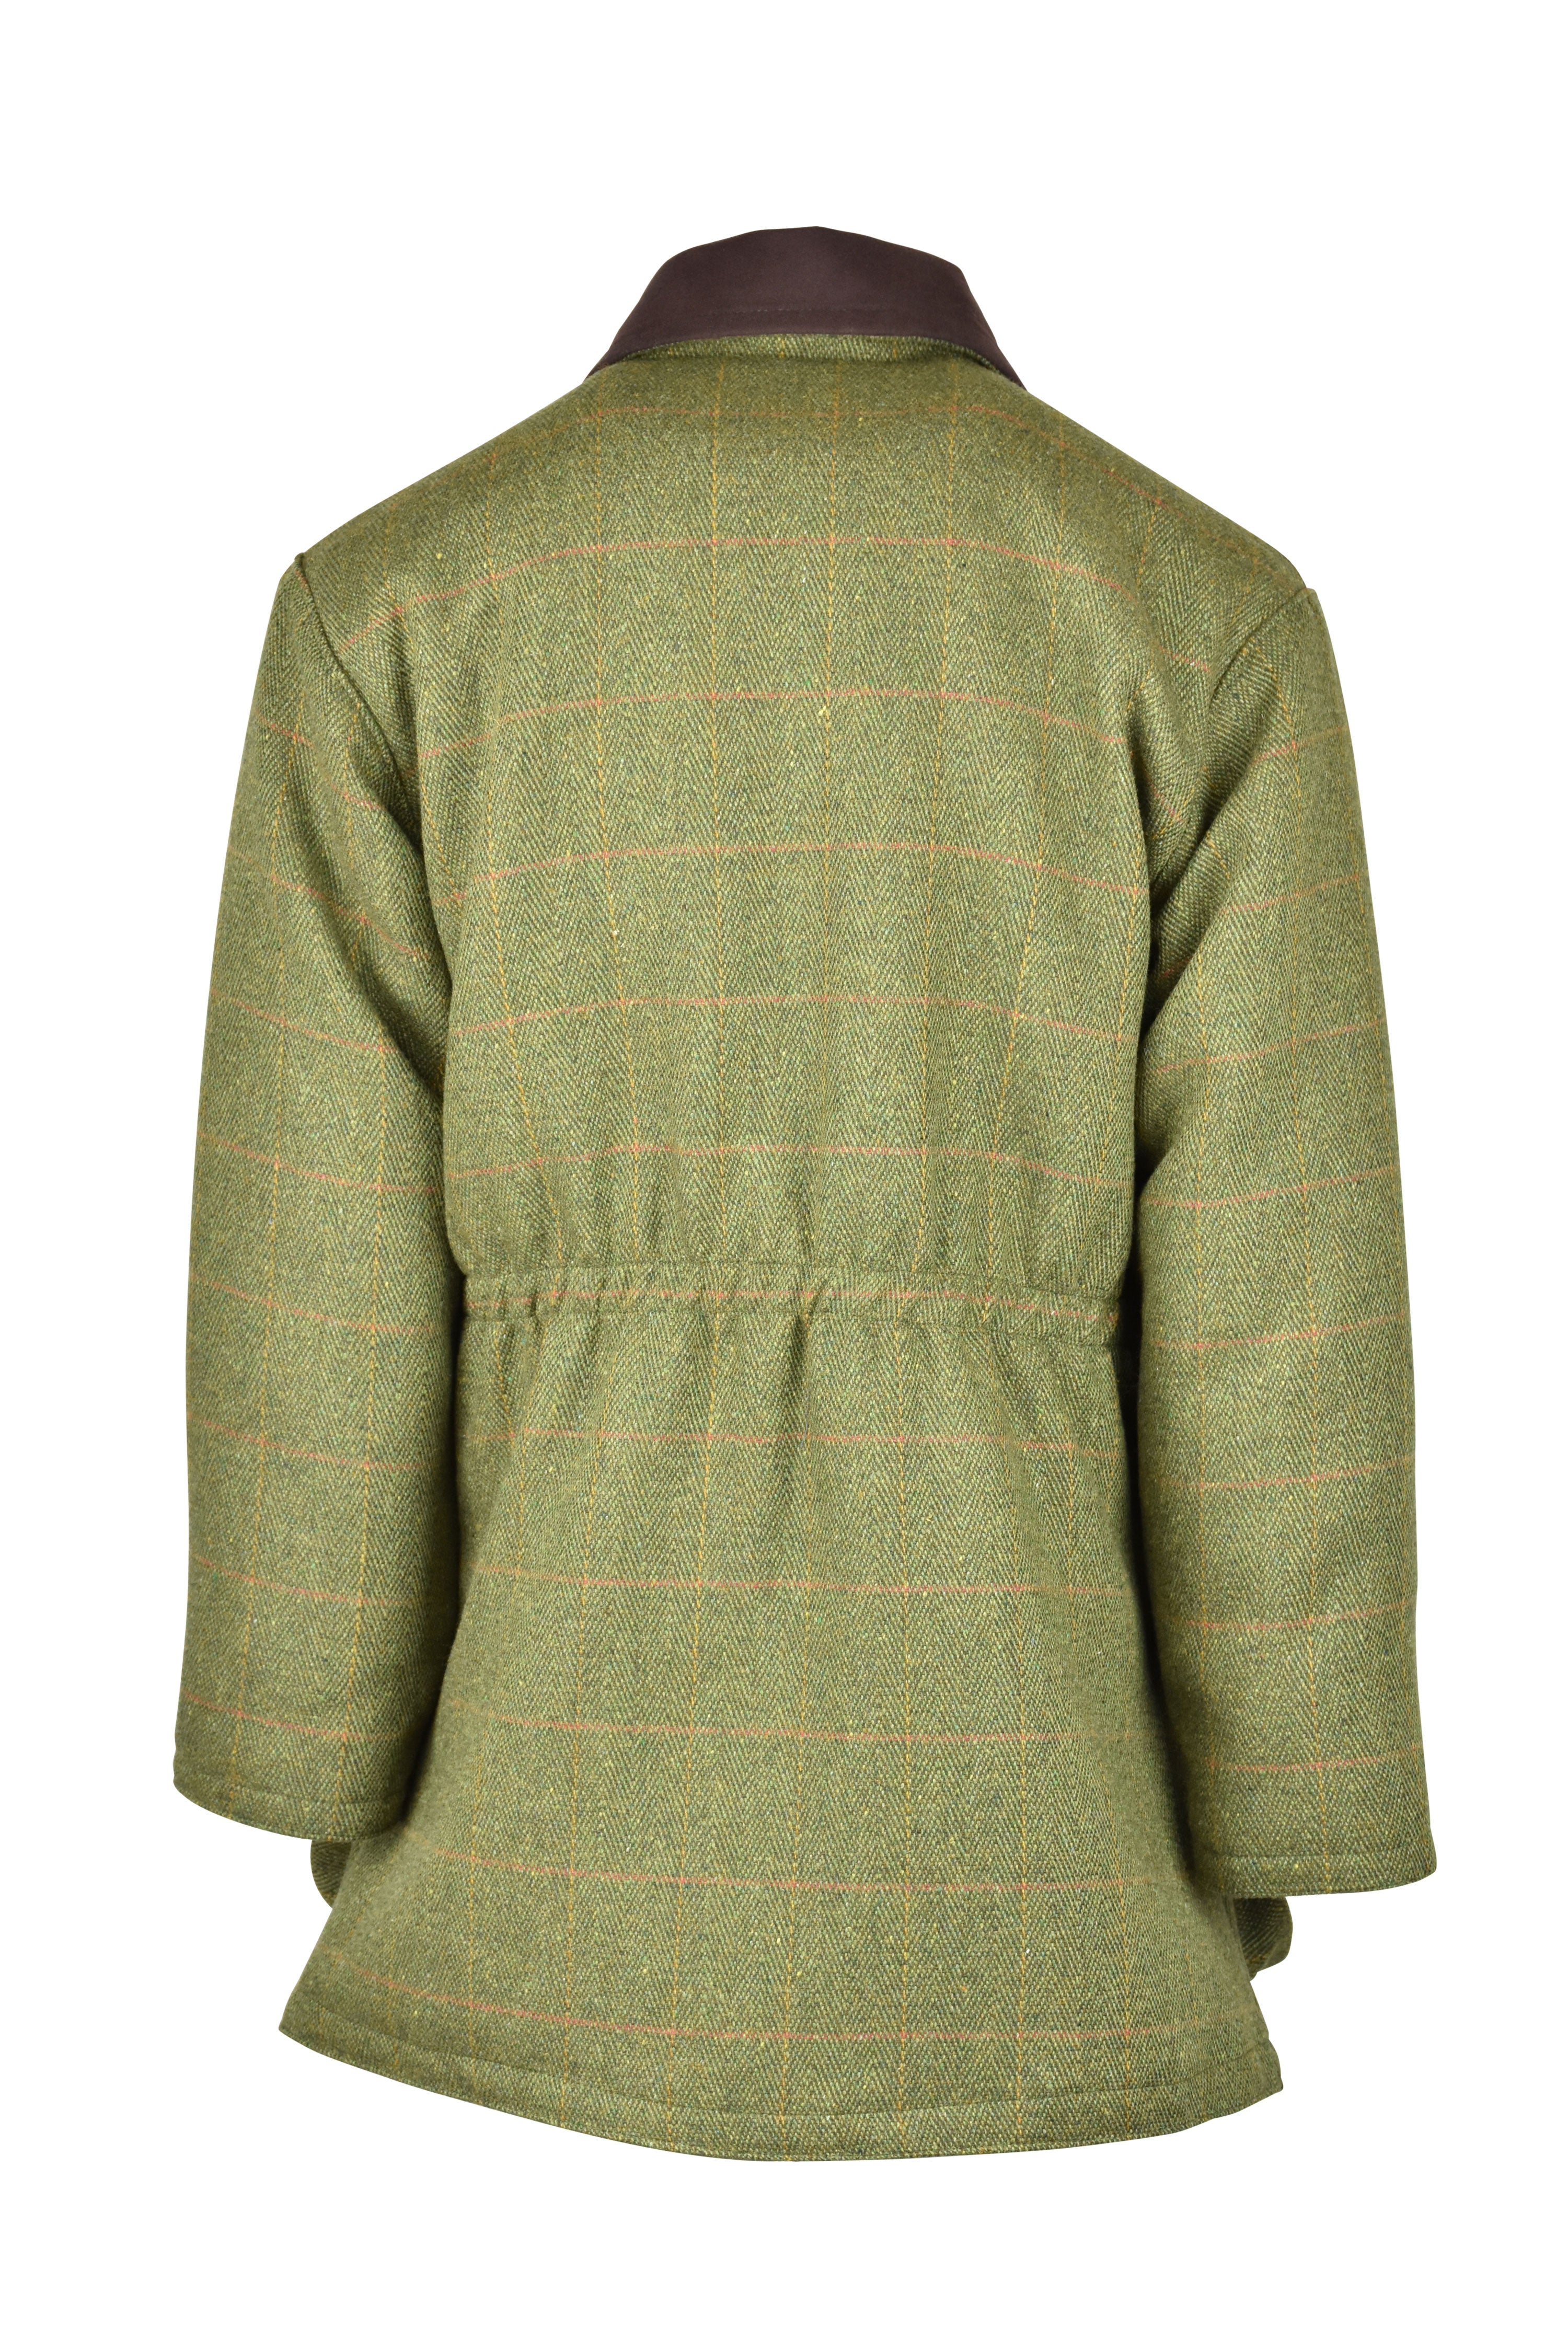 W29 - Ladies Brampton Tweed Coat LOAVT (5433/22) - Oxford Blue